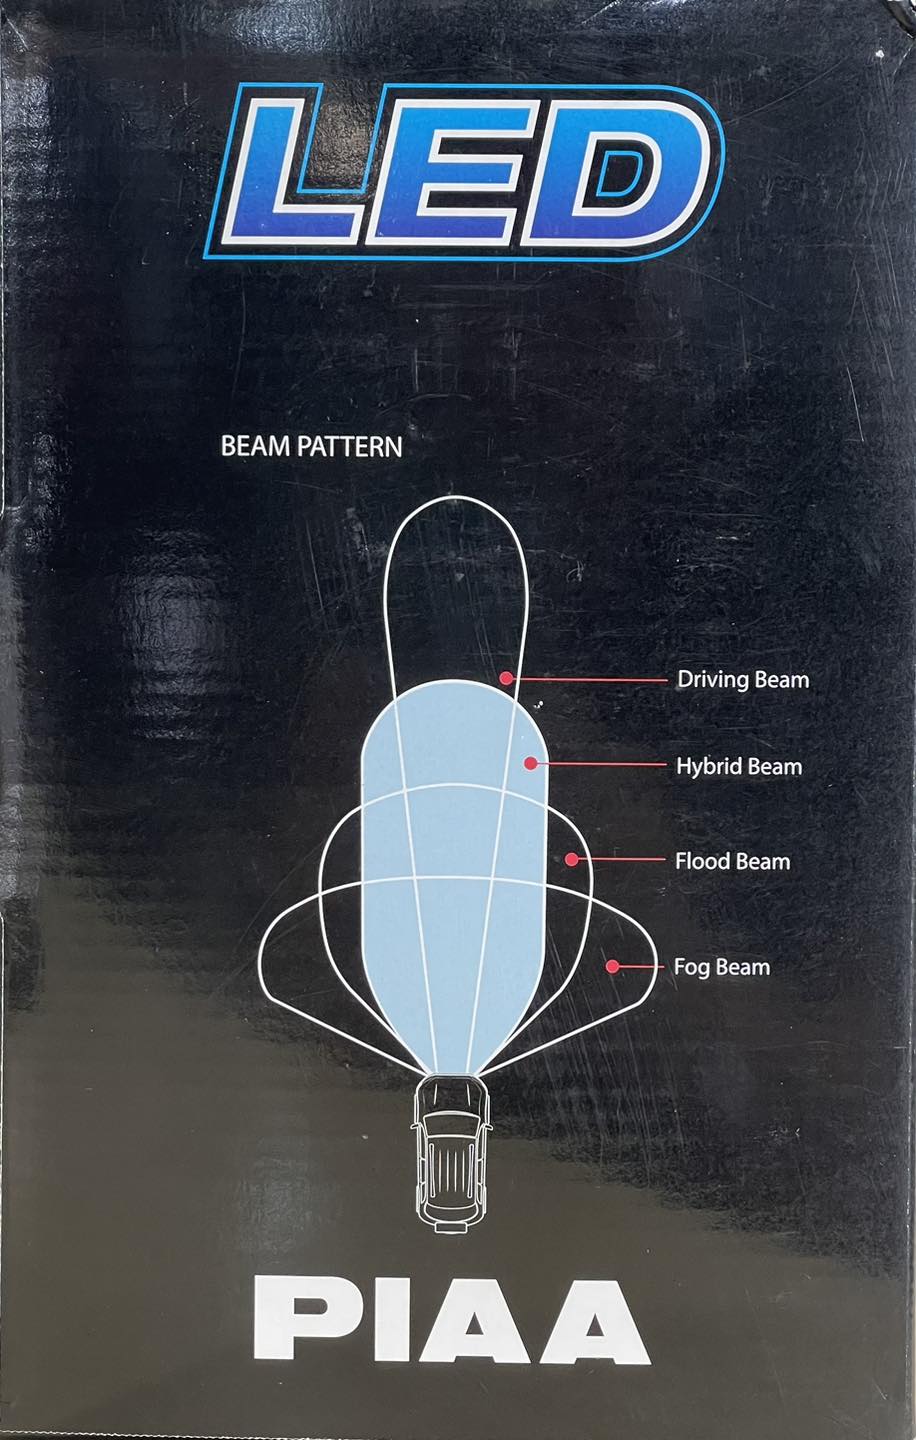 สปอร์ตไลท์ #Piaa รุ่น RF10 Seriesขนาดความยาว 10 นิ้ว ลำแสง Hybrid Beam LED แสงสีขาว - อุณหภูมิแสง 6000 Kelvin - มีสปอร์ตไลท์ 1 ดวง- มีชุดสายไฟพร้อมสวิตซ์ -  มีฝาครอบไฟแยกขาย + สีส้มตัดหมอก+ สีดำปิดไม่ใช้งาน 
